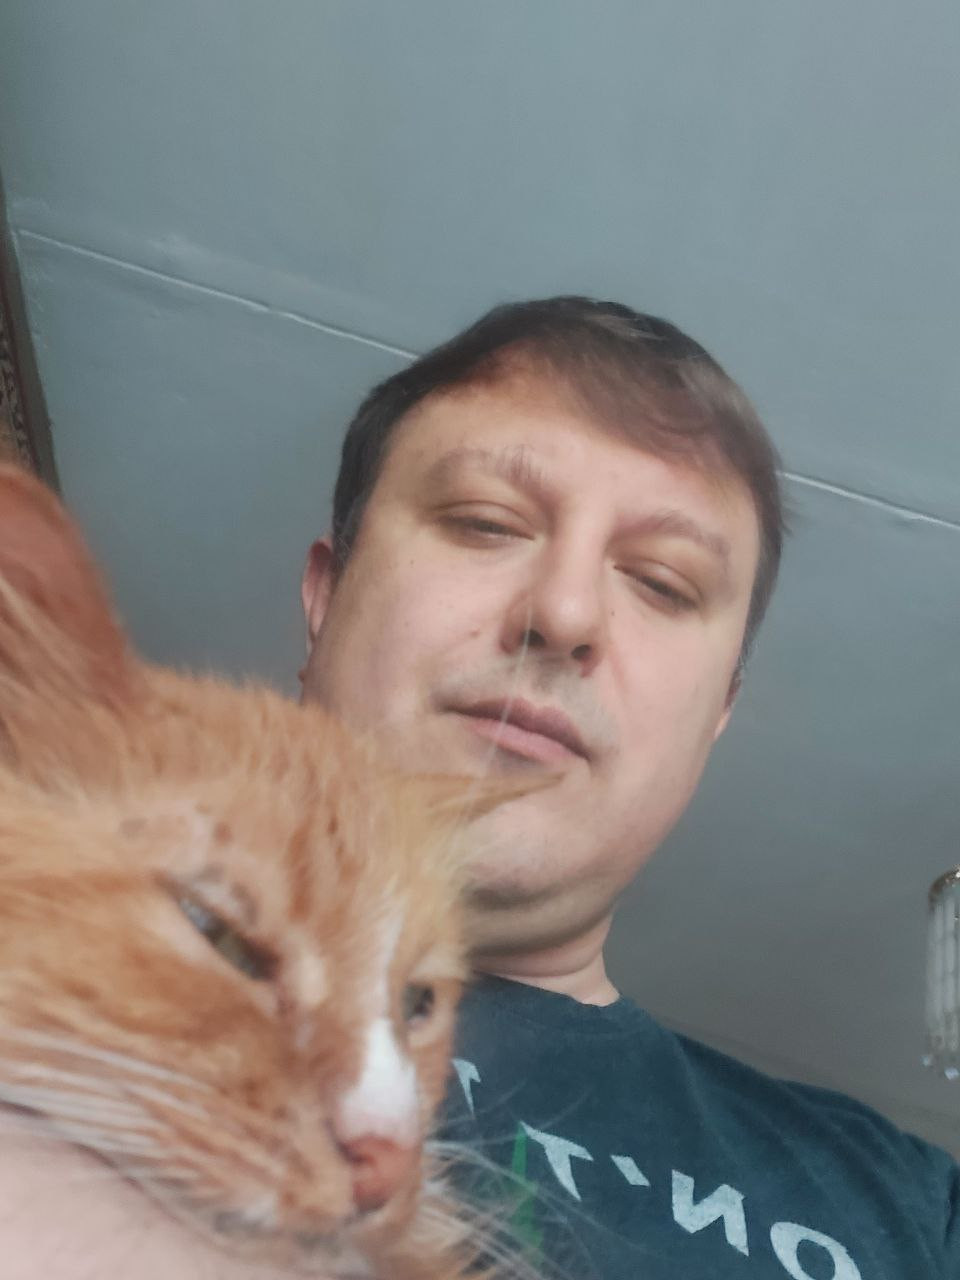 GO_selfie-with-cat